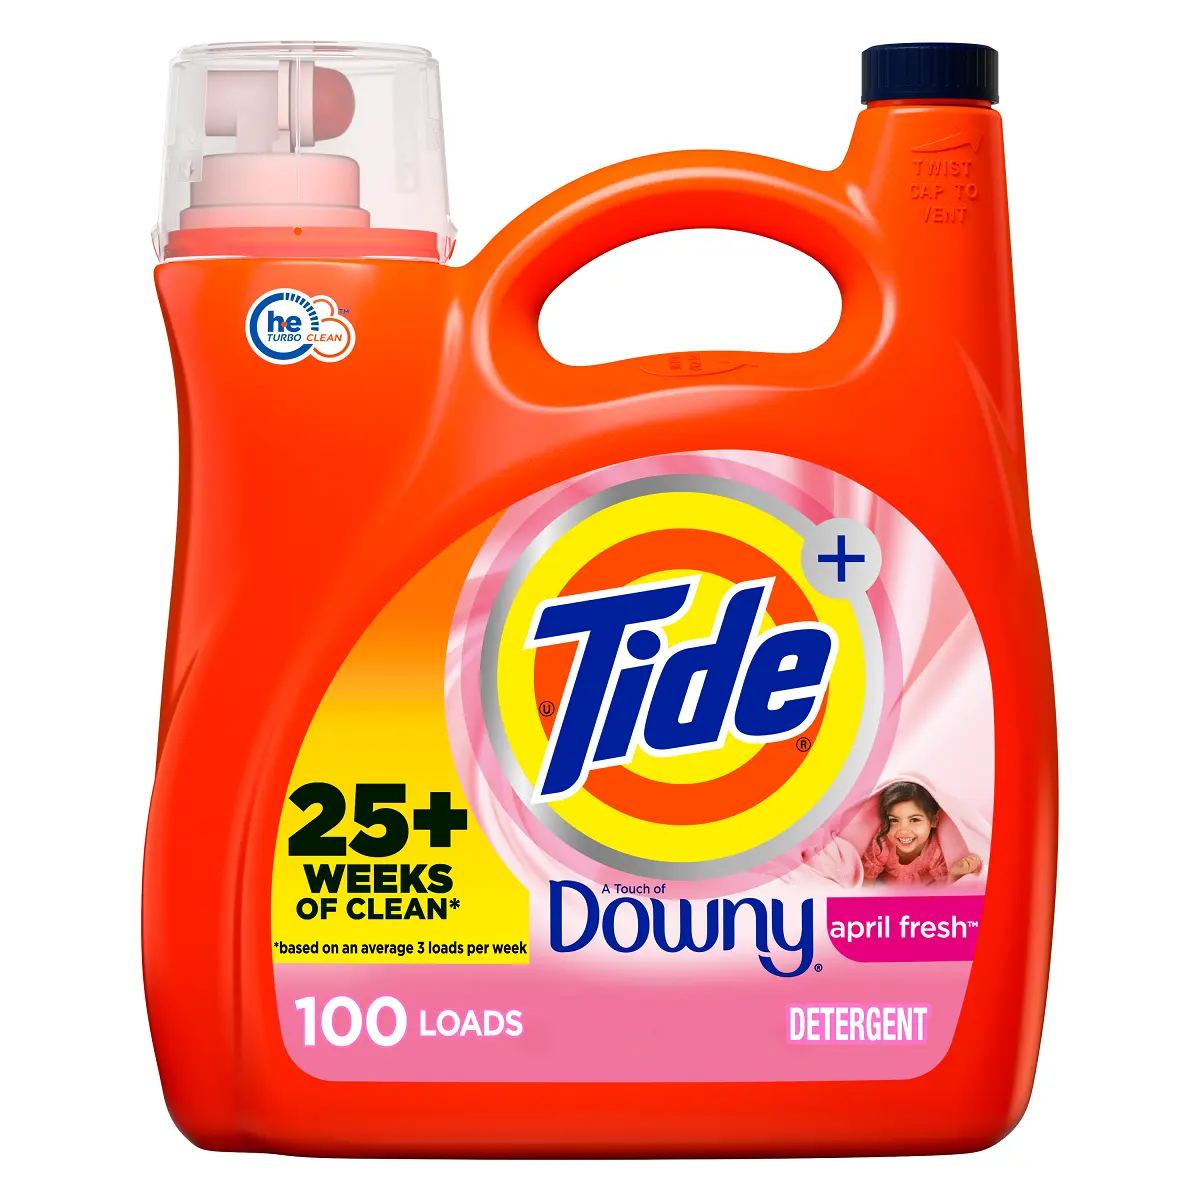 Venta al por mayor en línea Comprar marea con toque de Downy April Fresh Scent detergente líquido para ropa